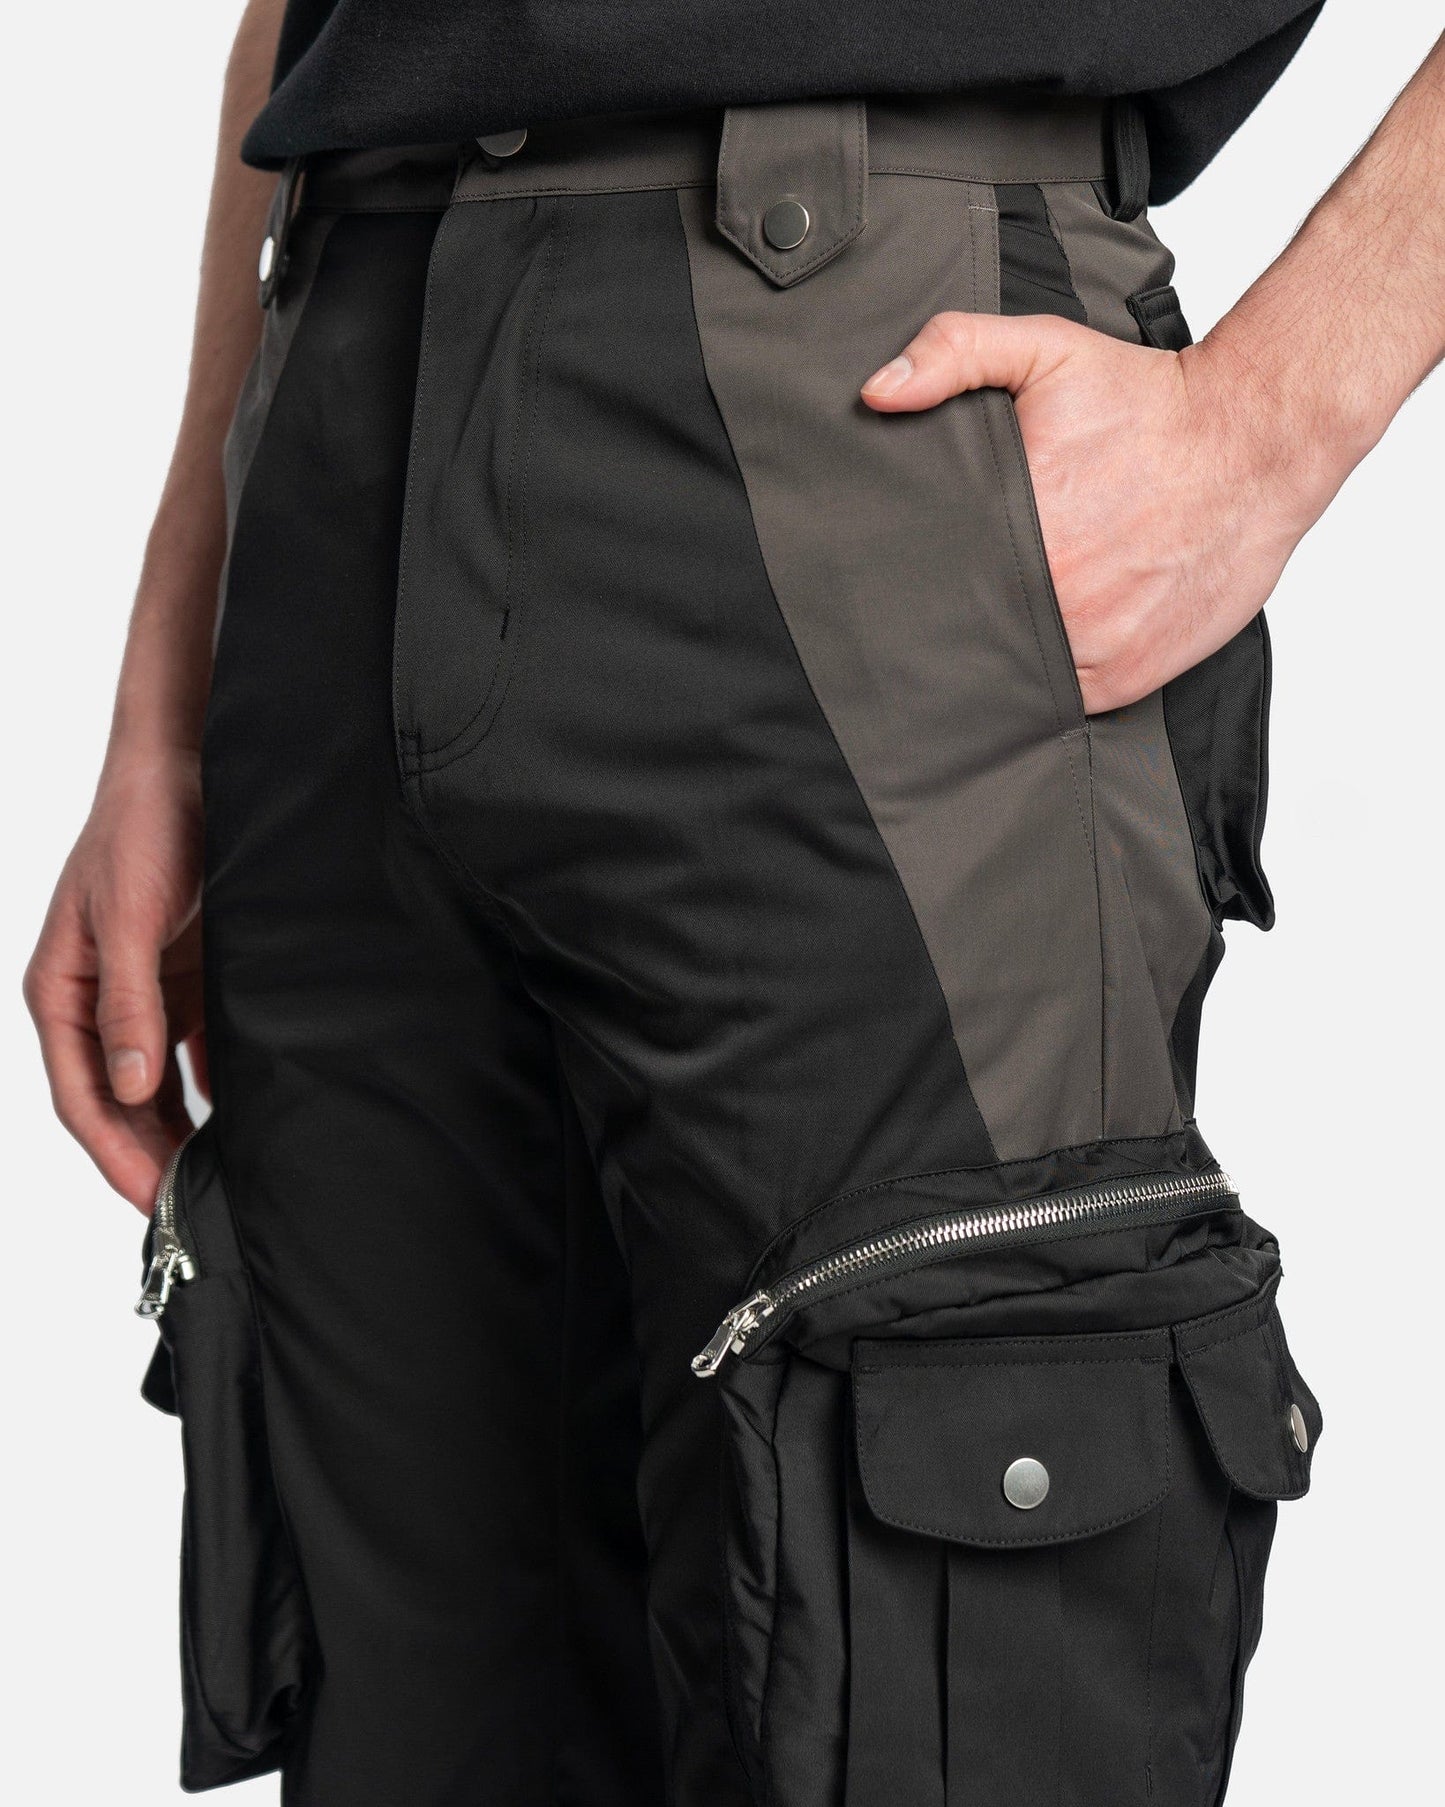 FFFPOSTALSERVICE Men's Pants Flare Cargo V 2.5 in Black/Grey